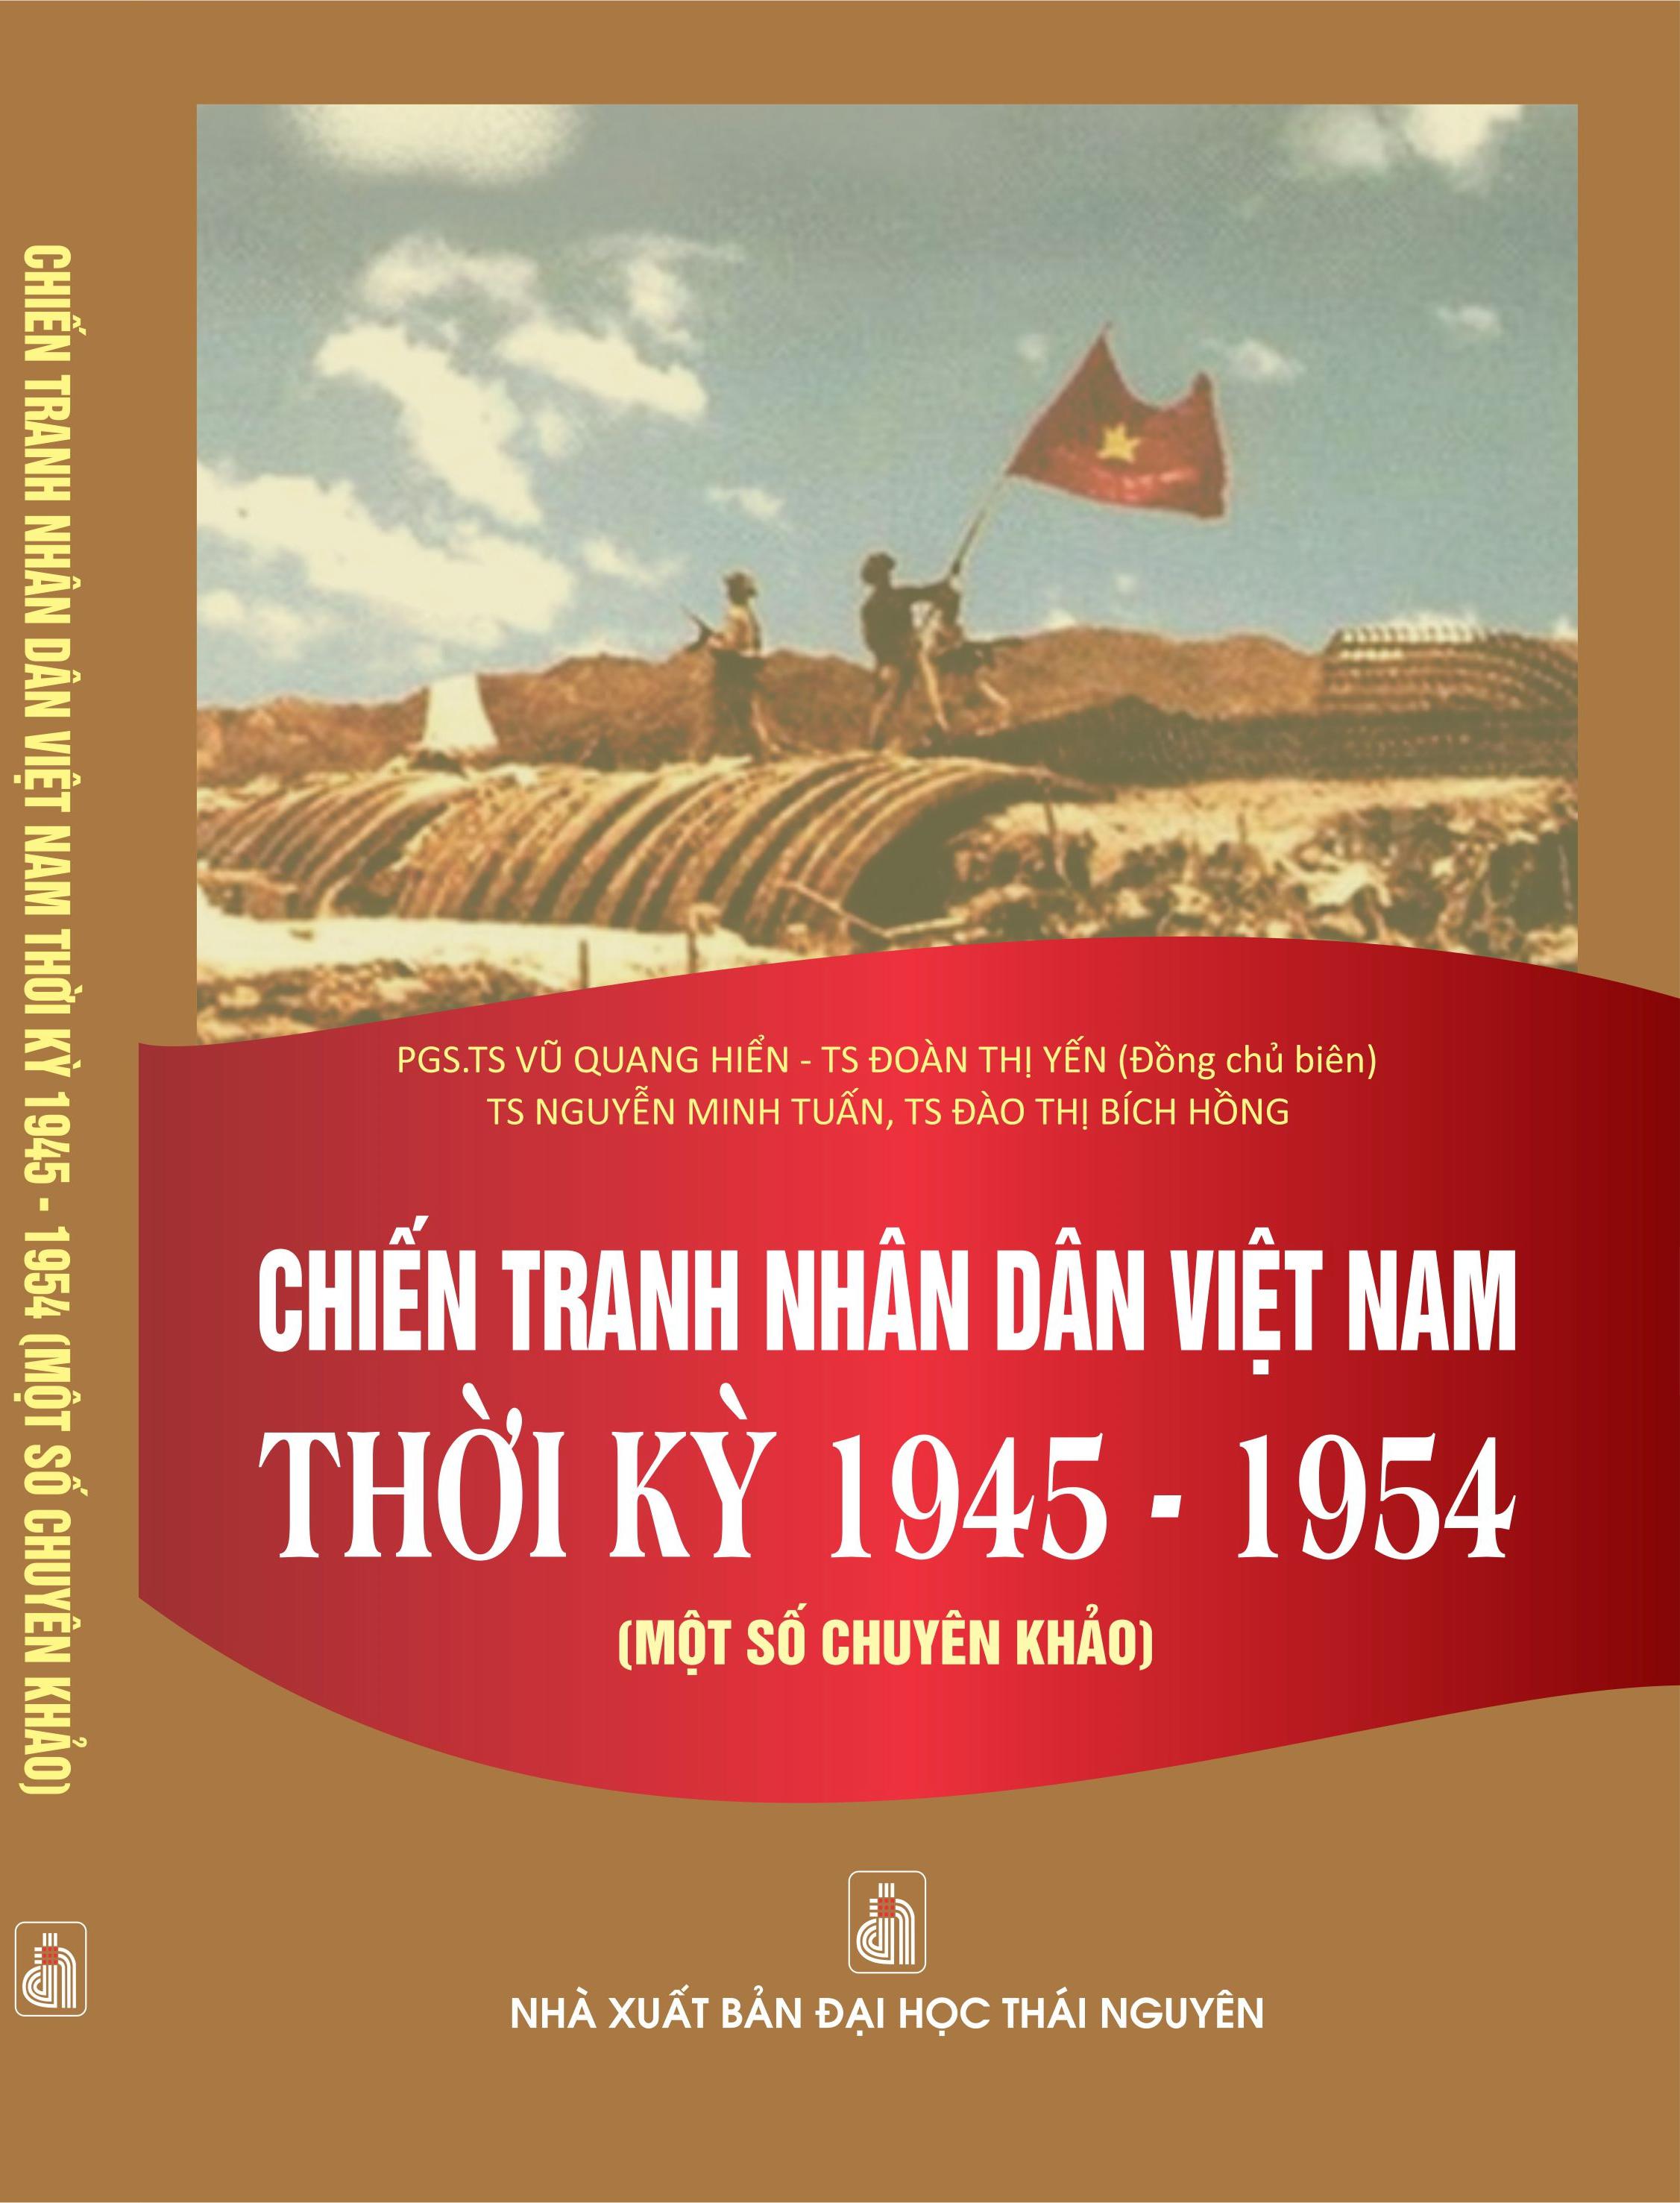 Chiến tranh nhân dân Việt Nam thời kỳ 1945 – 1954 (một số chuyên khảo)